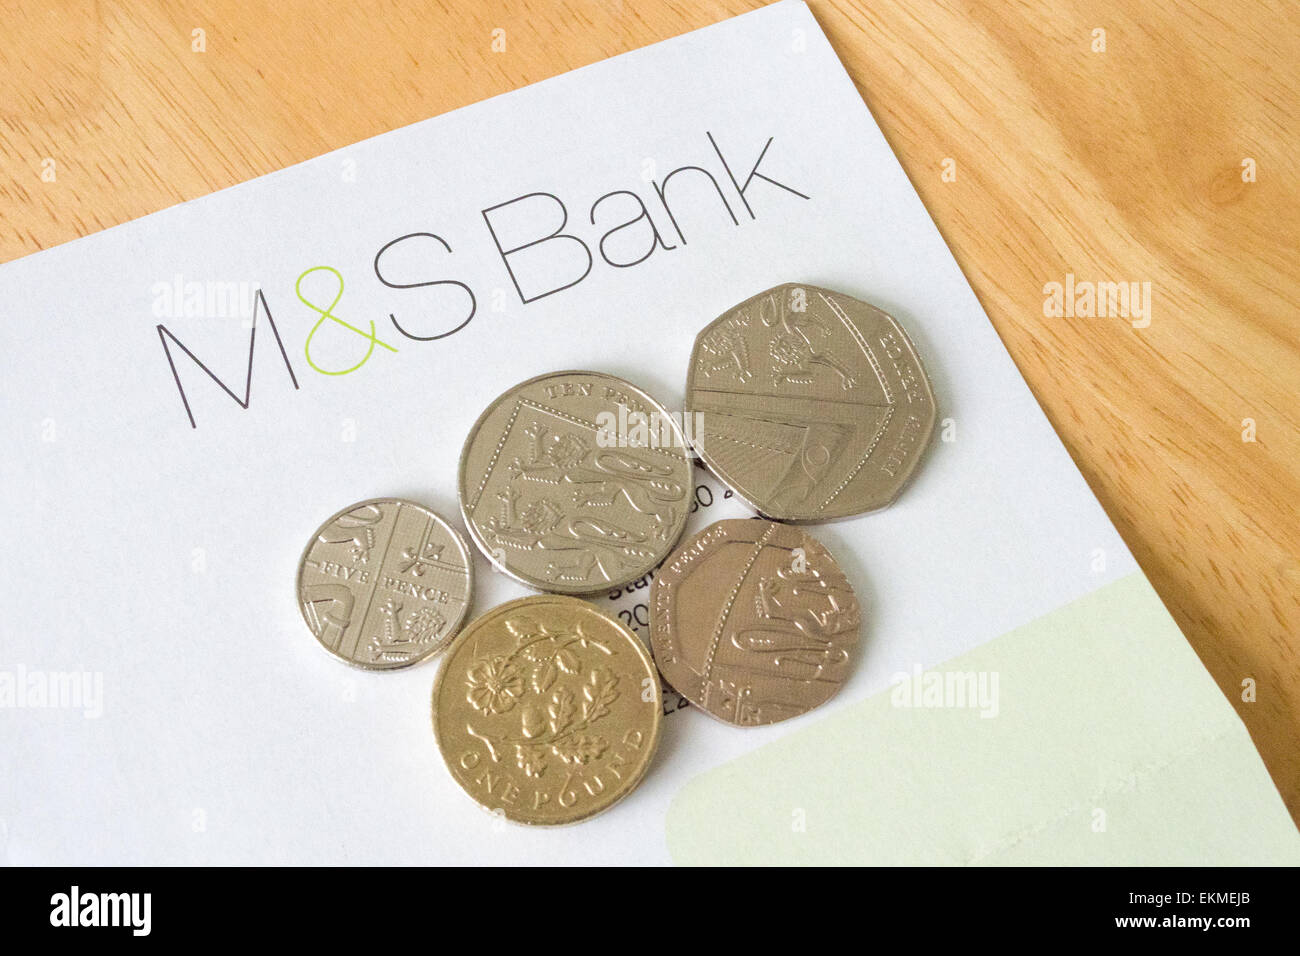 M & S Kreditkartenabrechnung auf einem hölzernen Tisch, UK Stockfoto